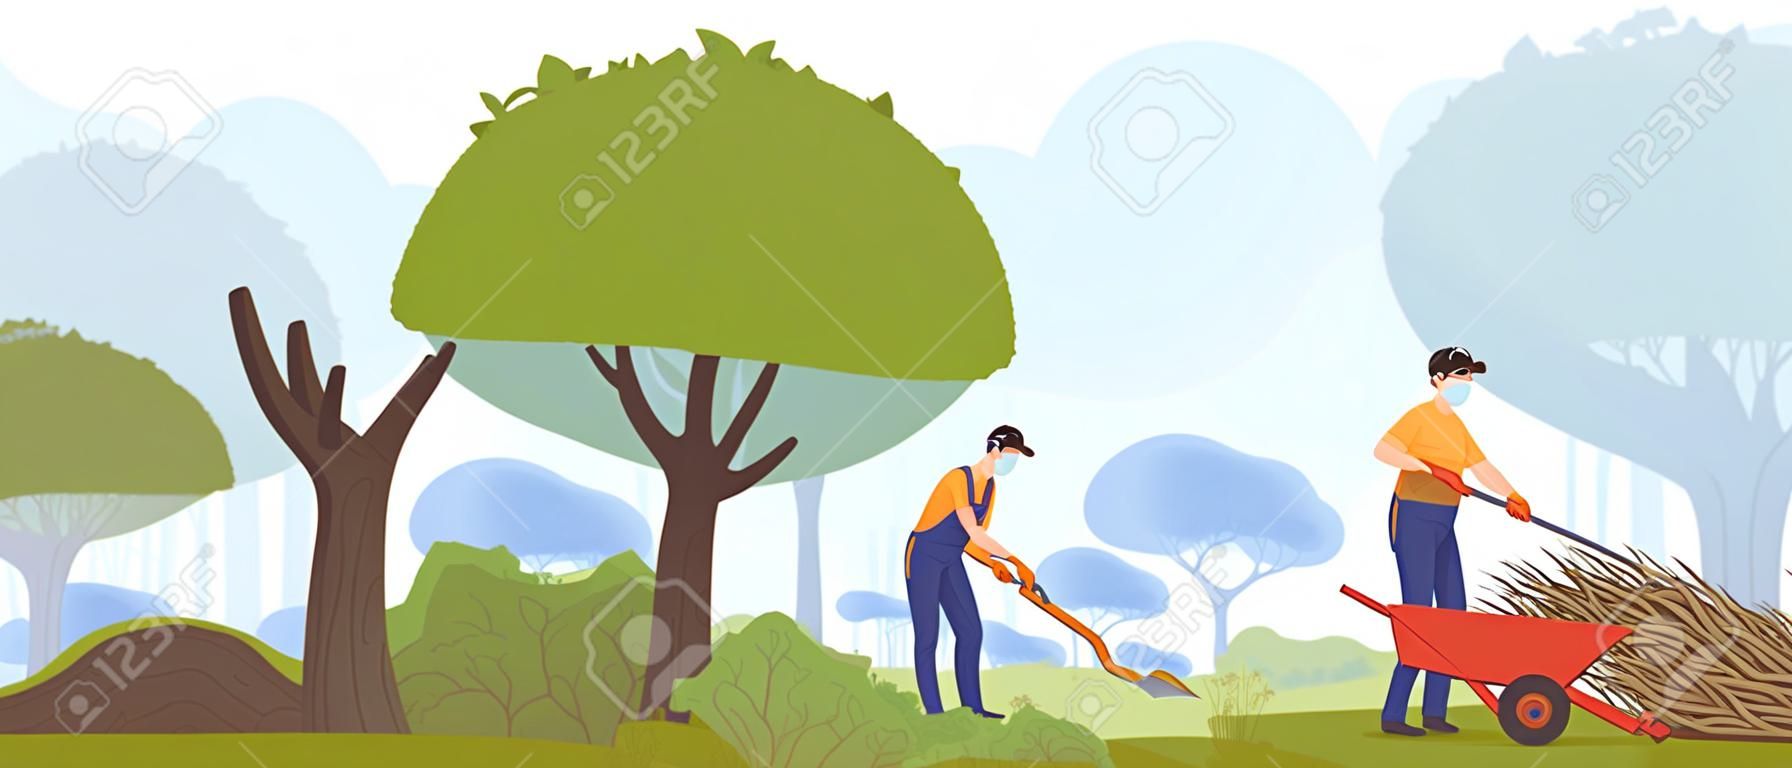 Illustration vectorielle de travail de jardin, dessin animé plat ouvriers jardiniers personnes travaillant avec des machines de jardinage, coupe d'arbre vert, élagage de buisson